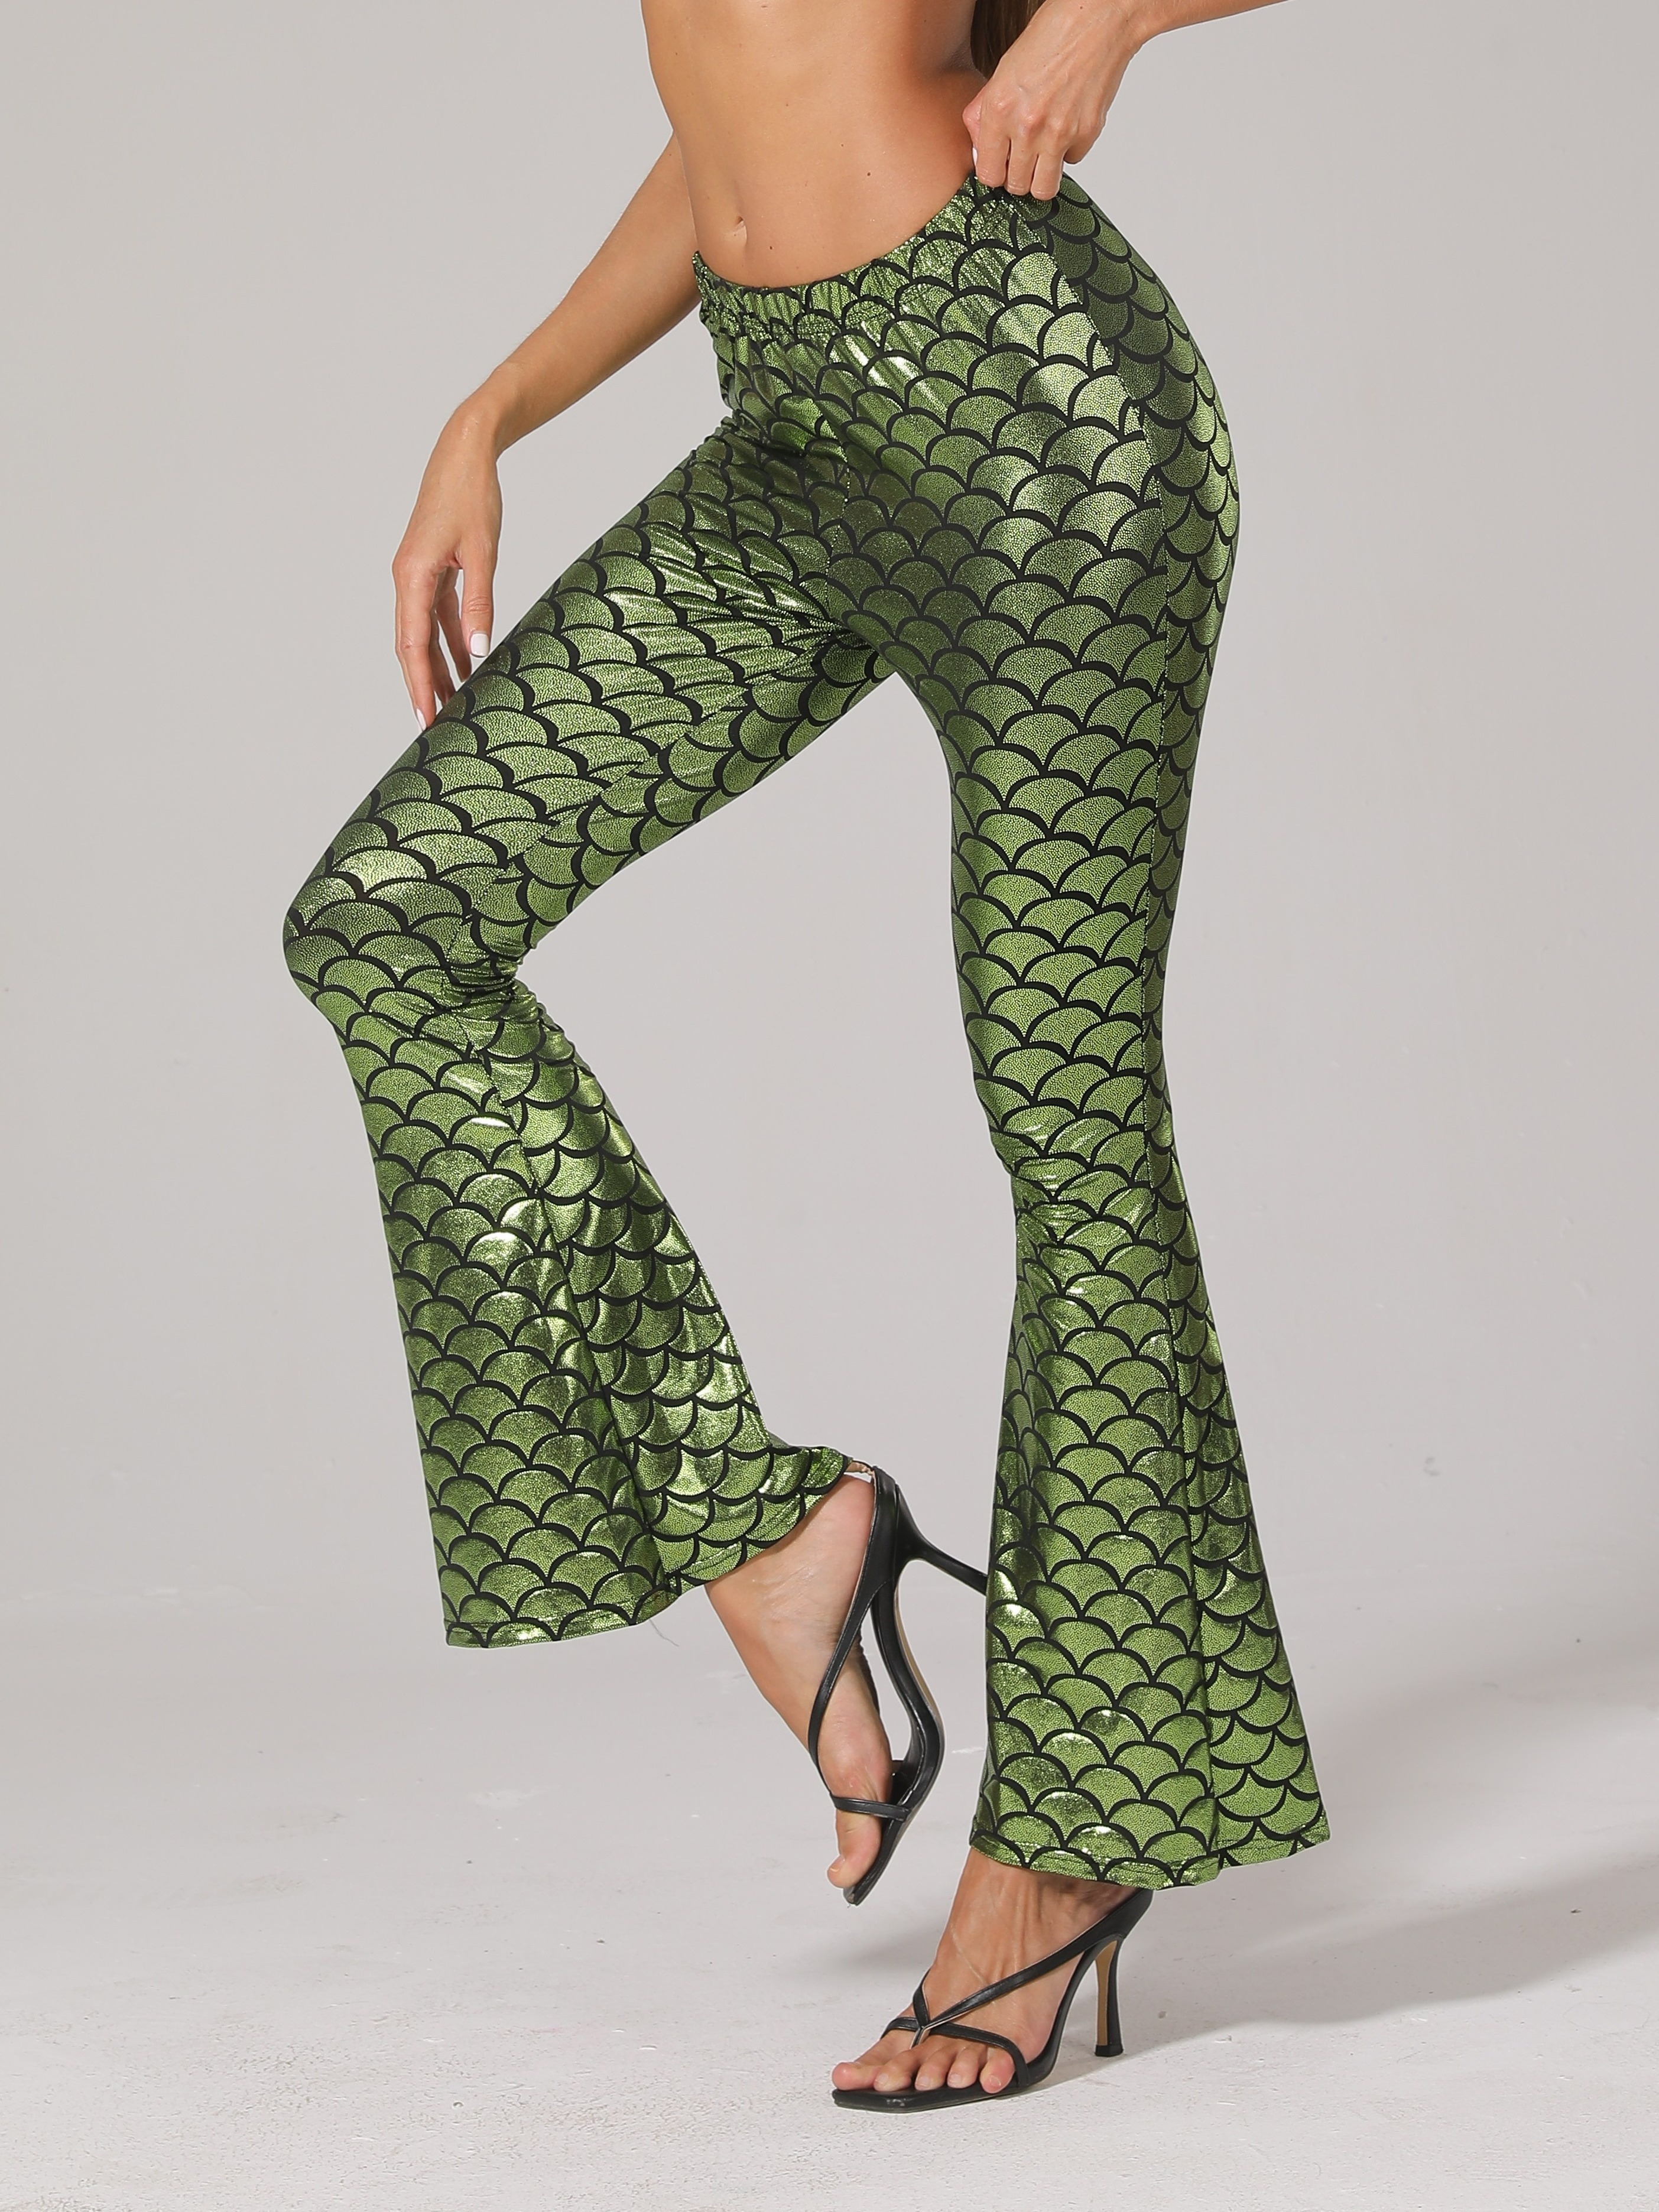 Mermaid minty green fish scales pattern leggings